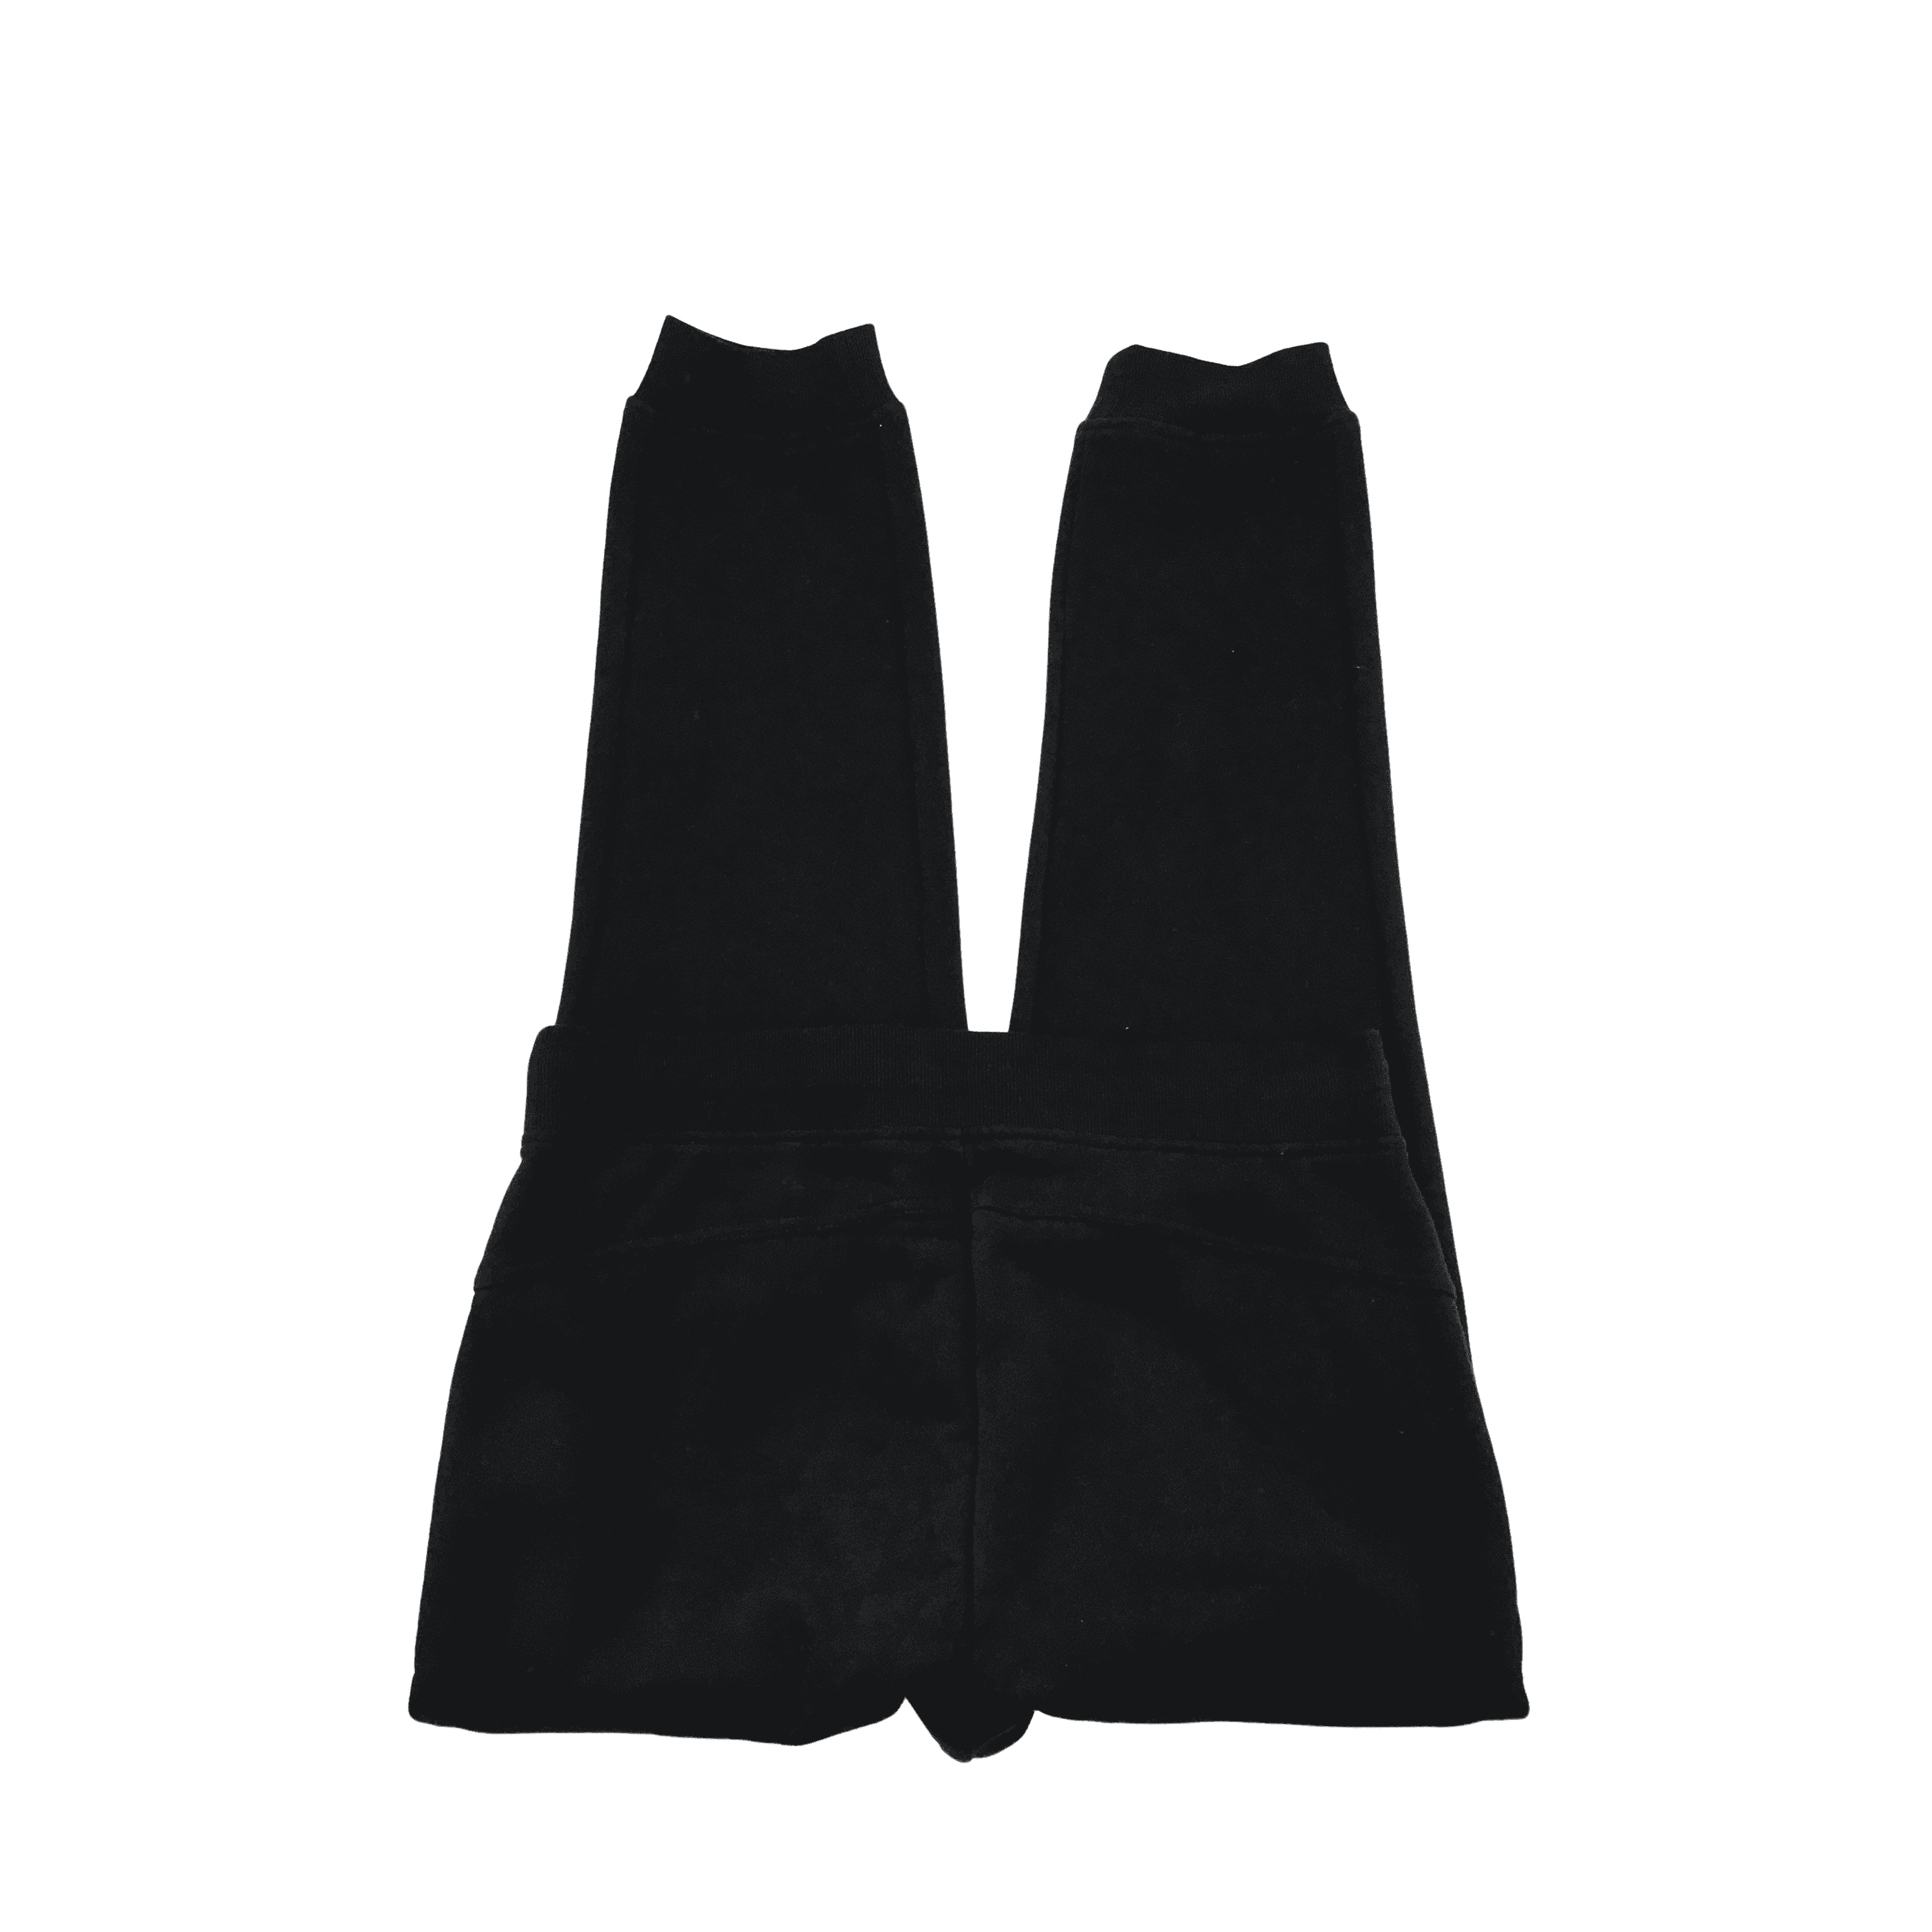 Bench Men’s Sweatpants / Jogging Pants /  Black / Various Sizes